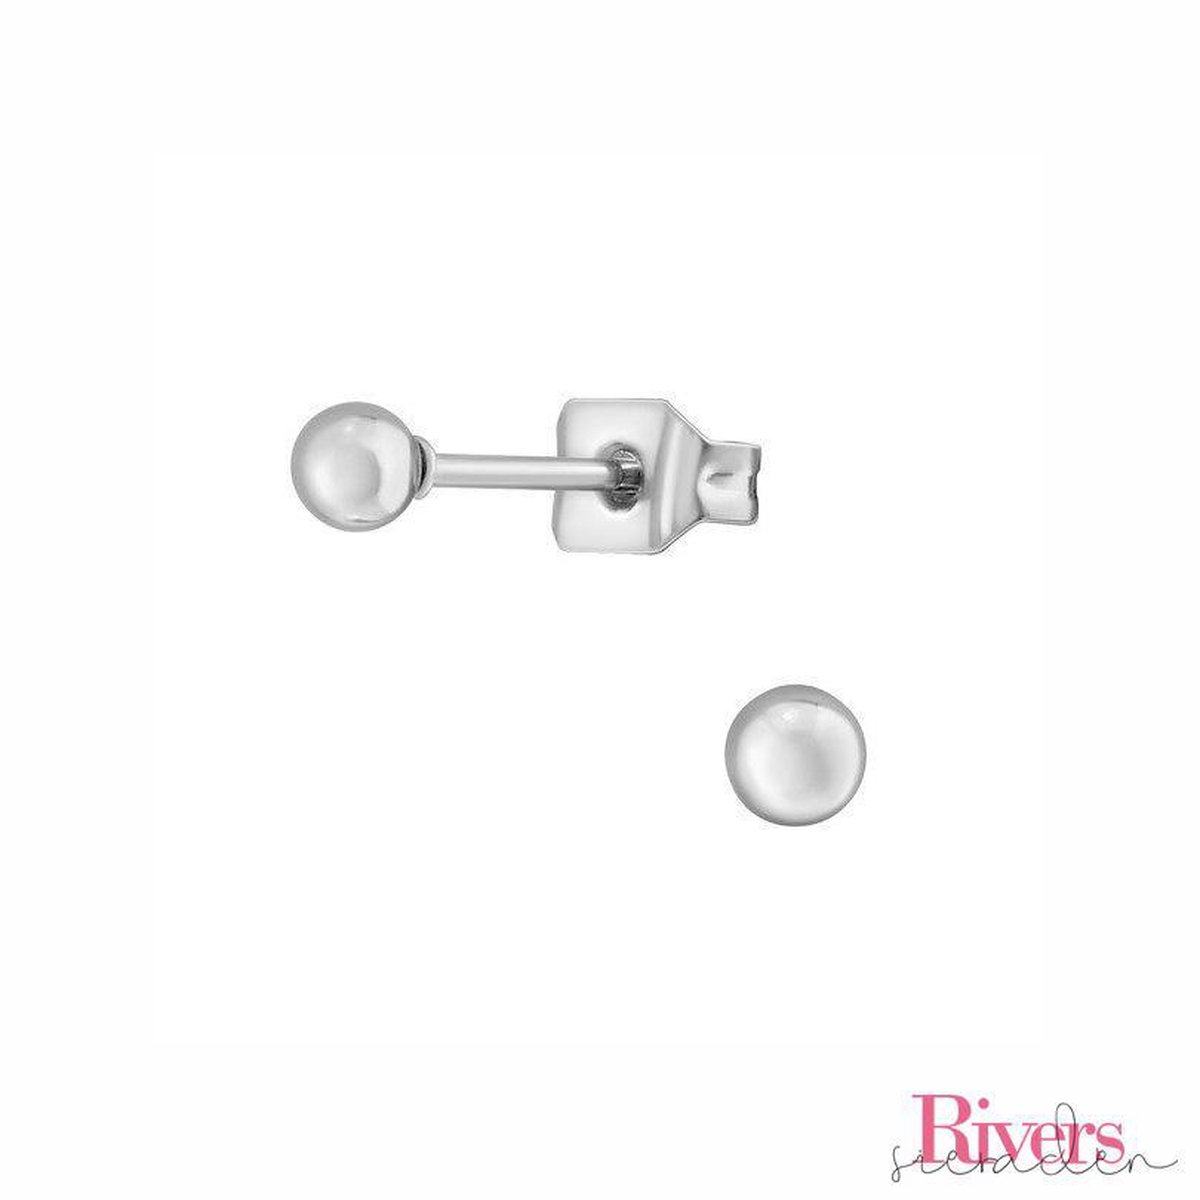 3mm oorbellen bolletjes - zilverkleurig - roestvrij staal - Rivers-sieraden - stainless steel - studs - oorbellen studs - Precious Jewel